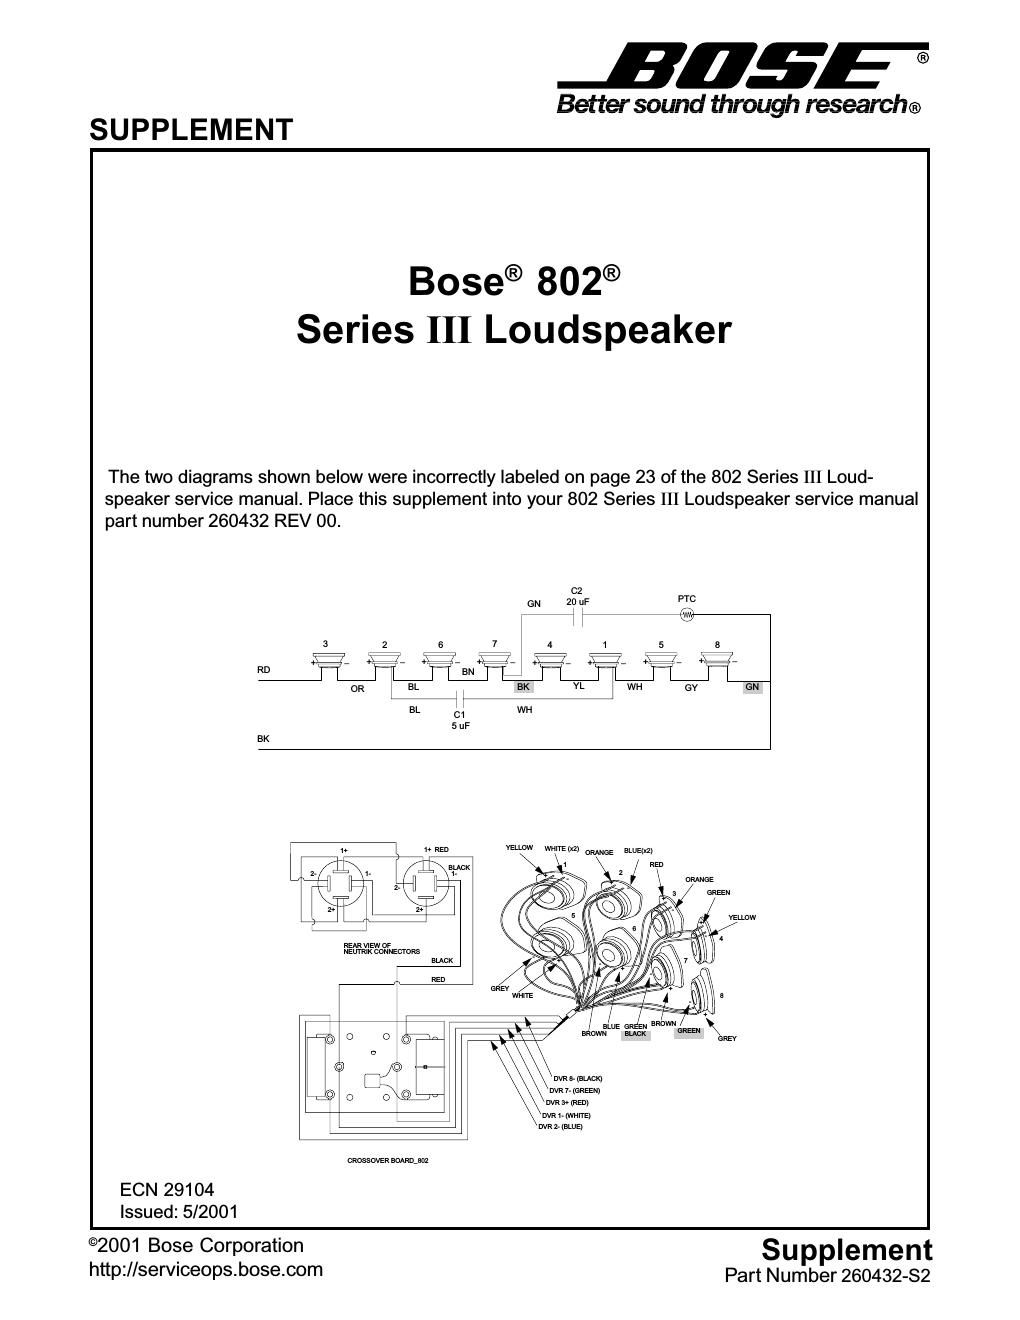 bose 802 iii speaker supplement s2